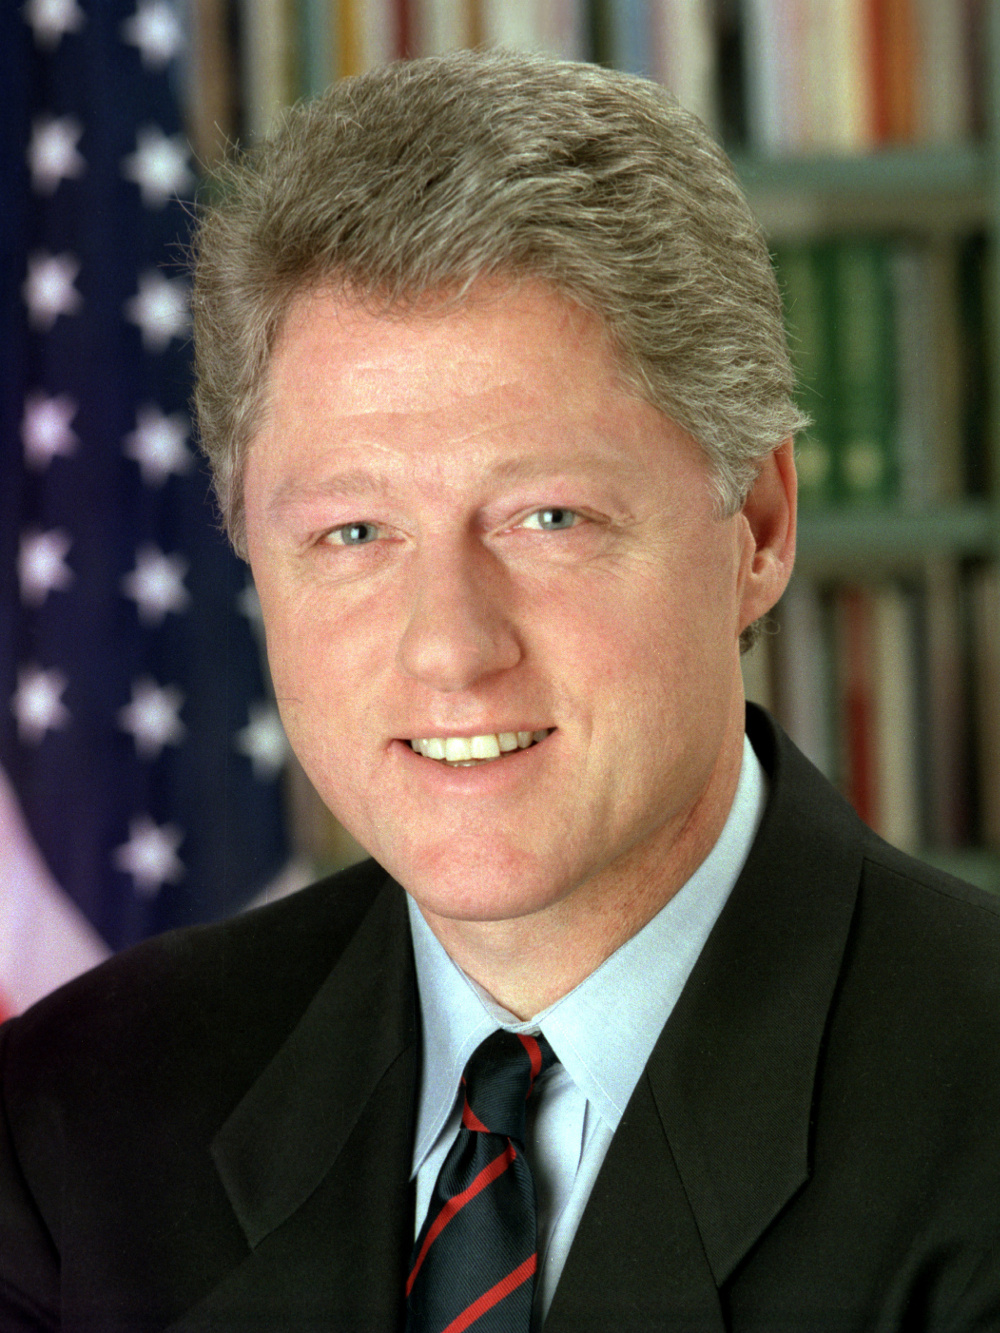 http://www.net4info.de/photos/cpg/albums/userpics/10002/Bill_Clinton.jpg